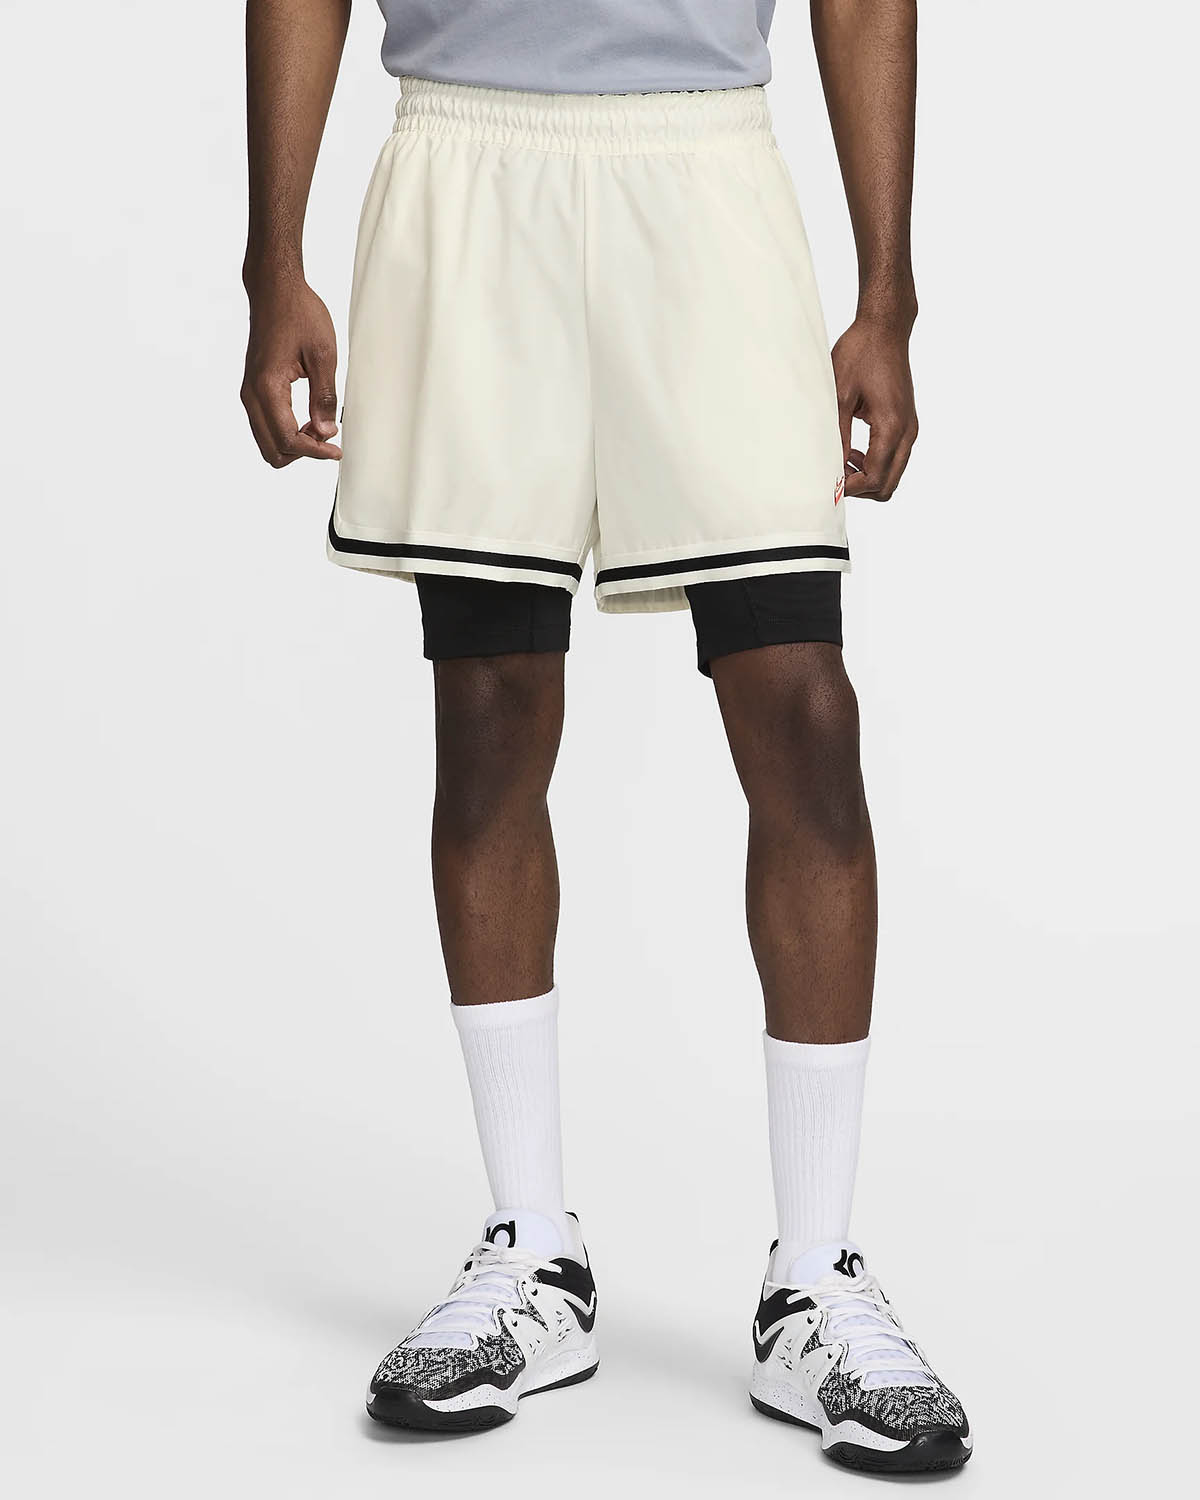 Nike KD 17 Basketball Shorts Sail